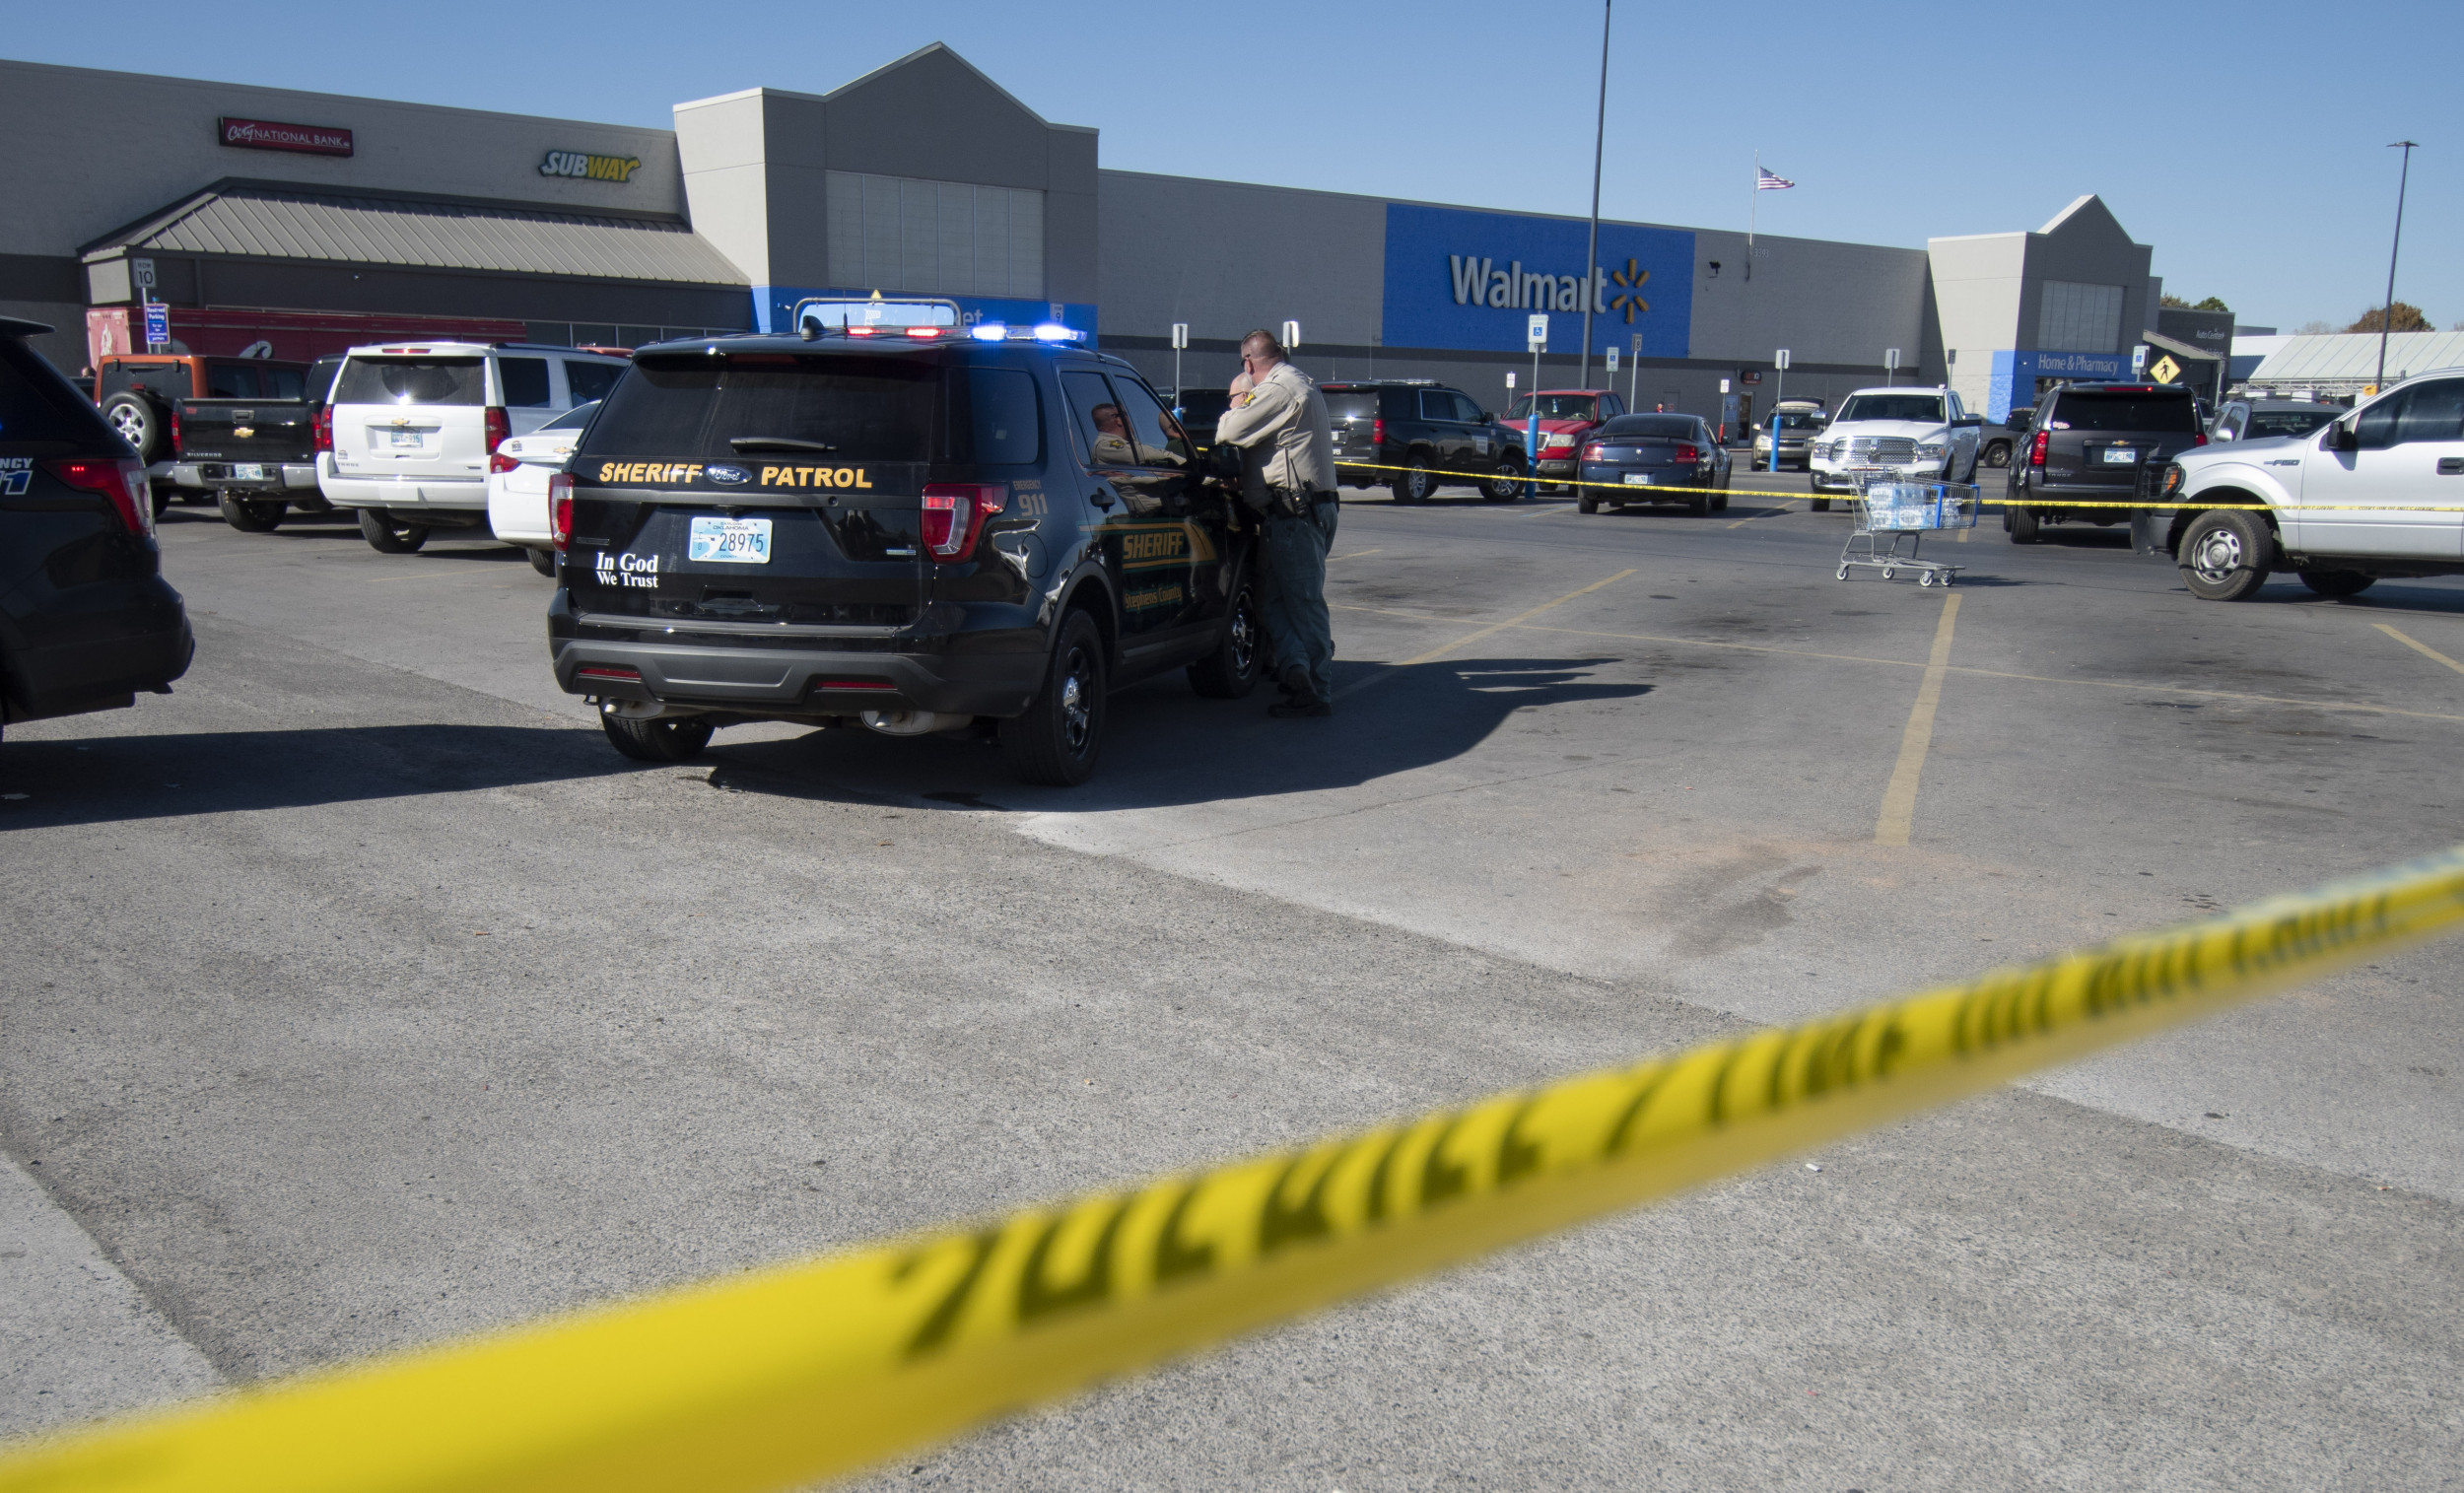 Une fusillade à l’intérieur d’un magasin de Walmart fait un mort dans l’Ohio – Police